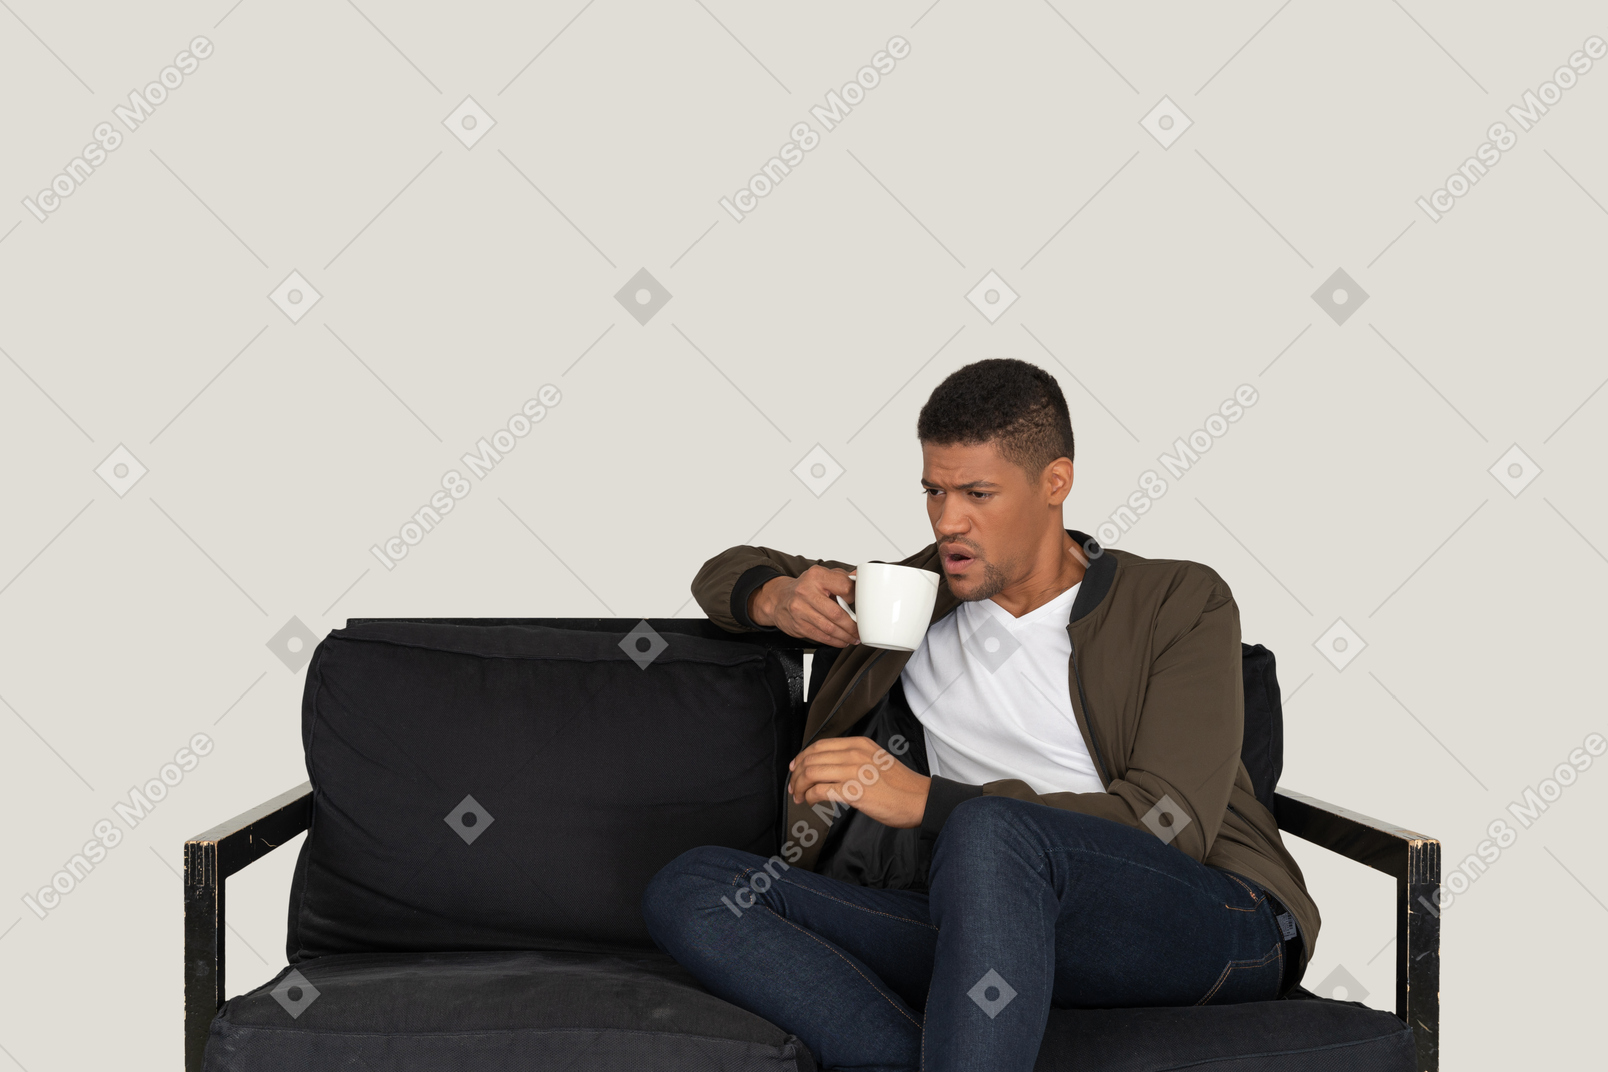 Vista frontal de un joven disgustado sentado en un sofá con una taza de café